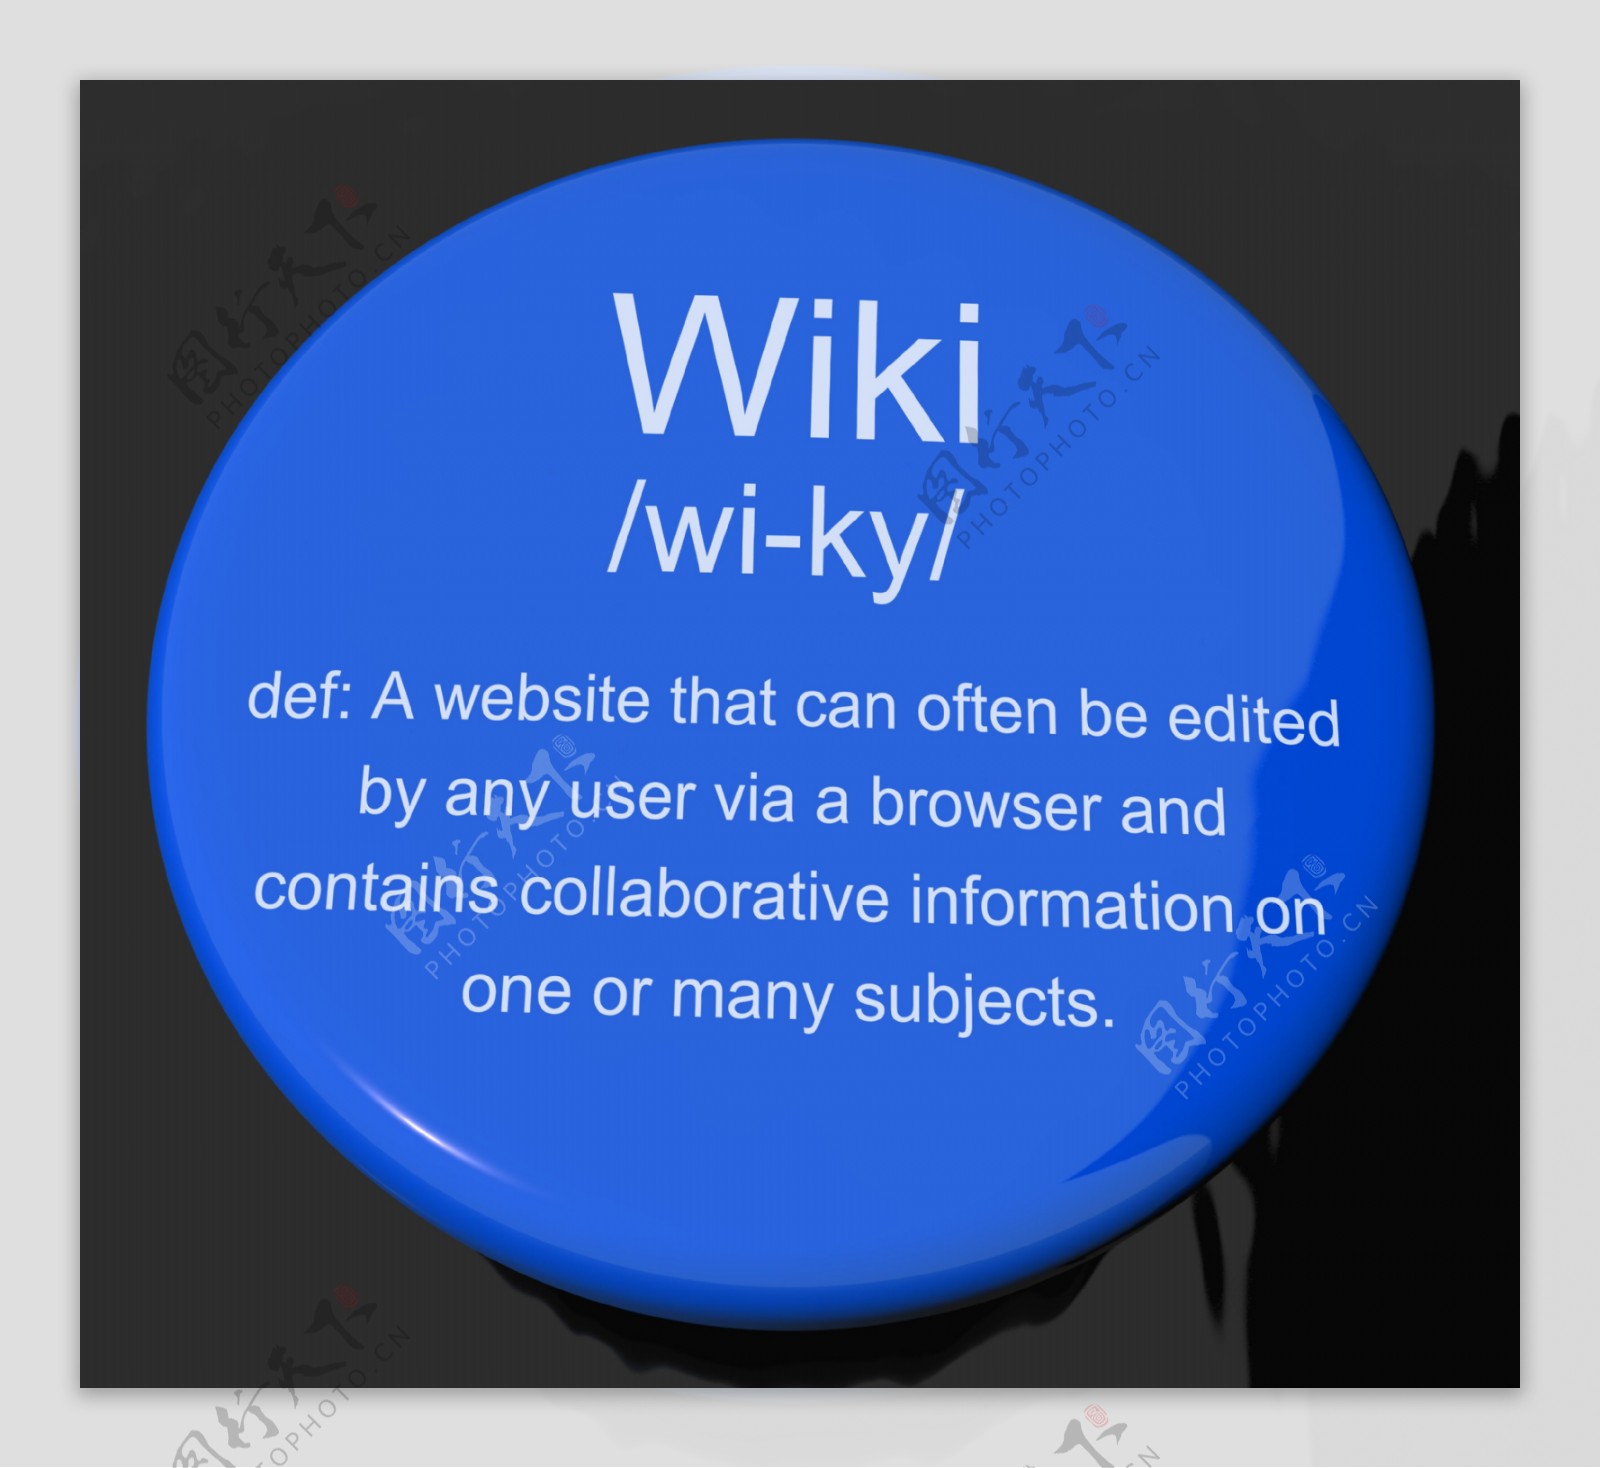 Wiki定义按钮显示在线协作的社会百科全书